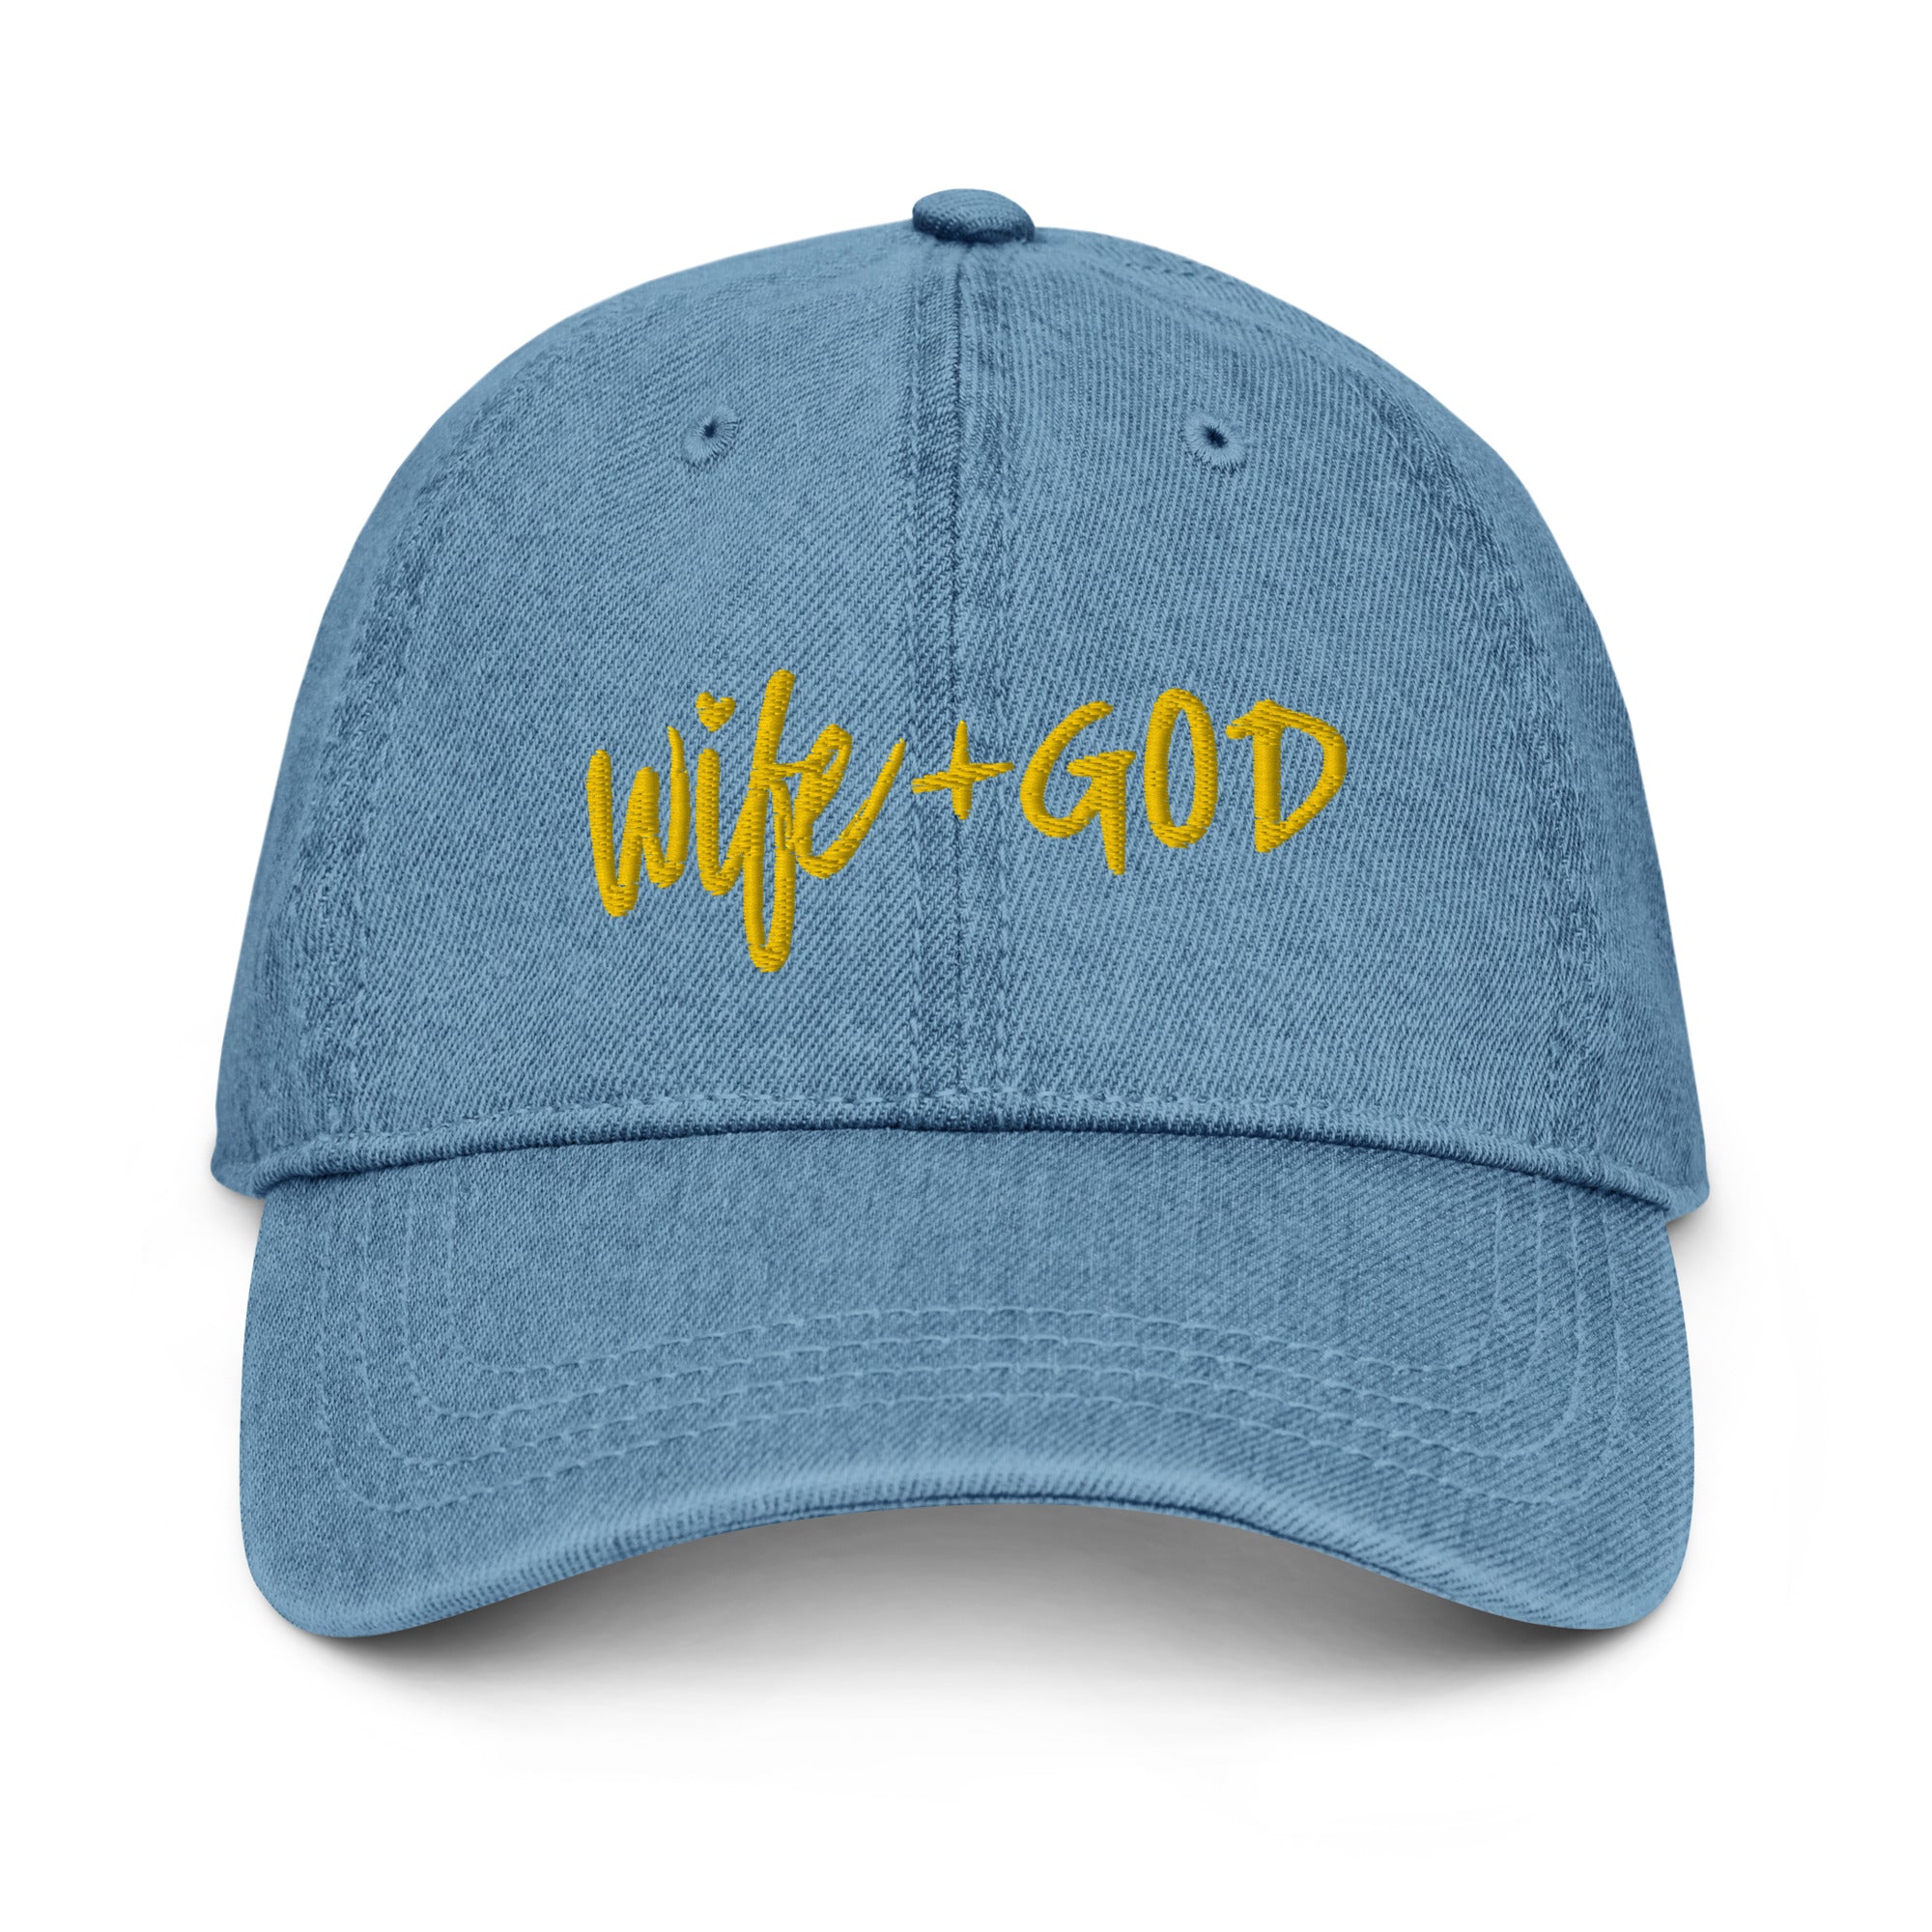 Wife + God "Wifey" Denim Hat